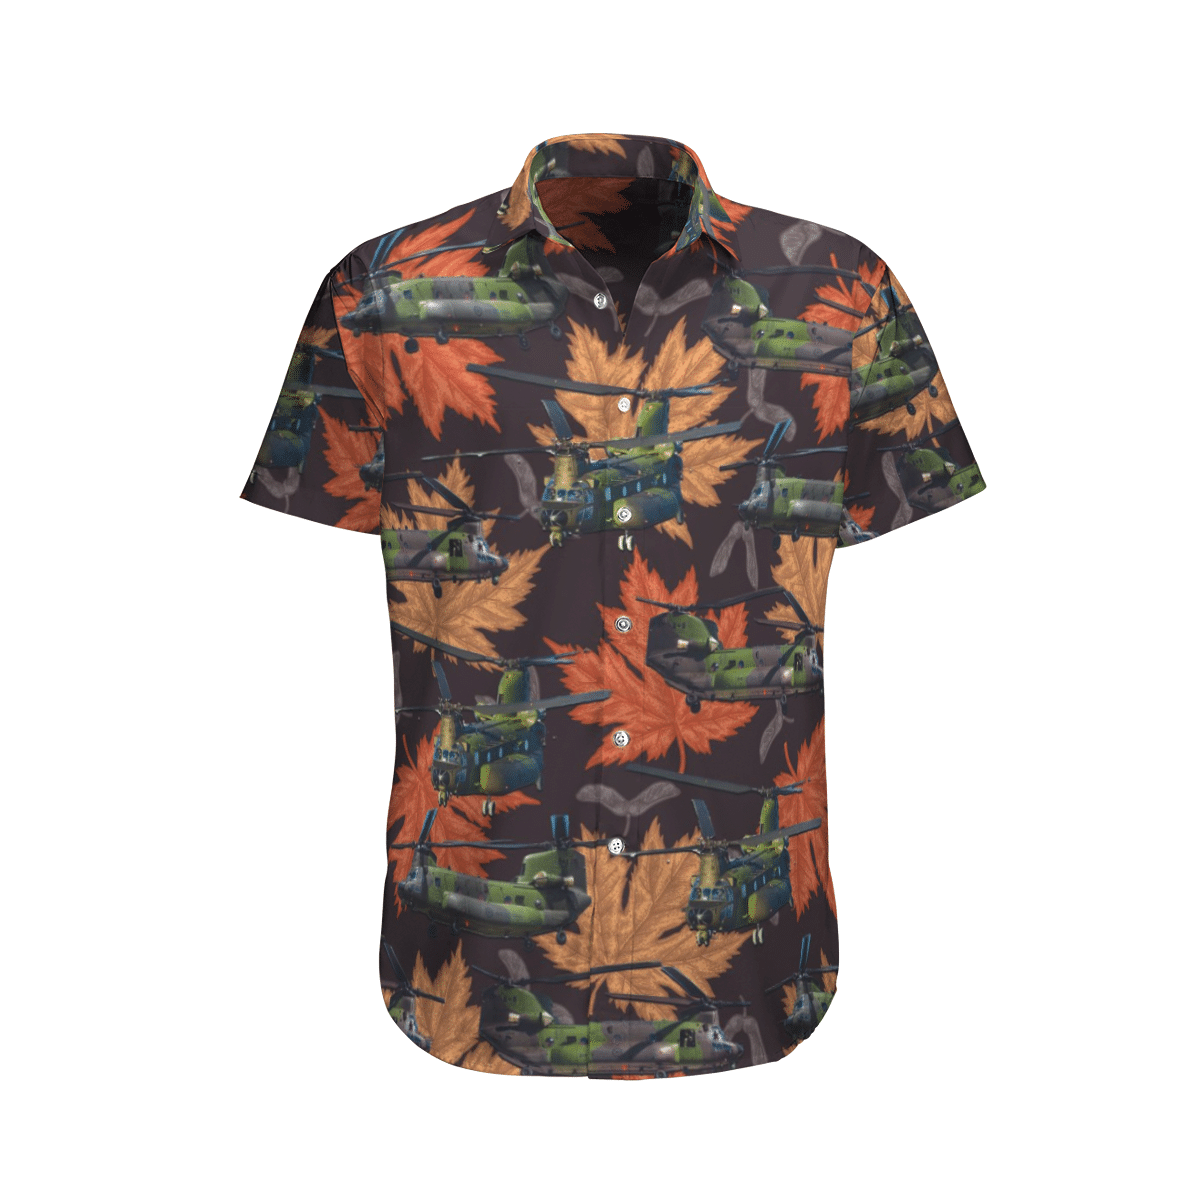 Beautiful Hawaiian shirts for you 240